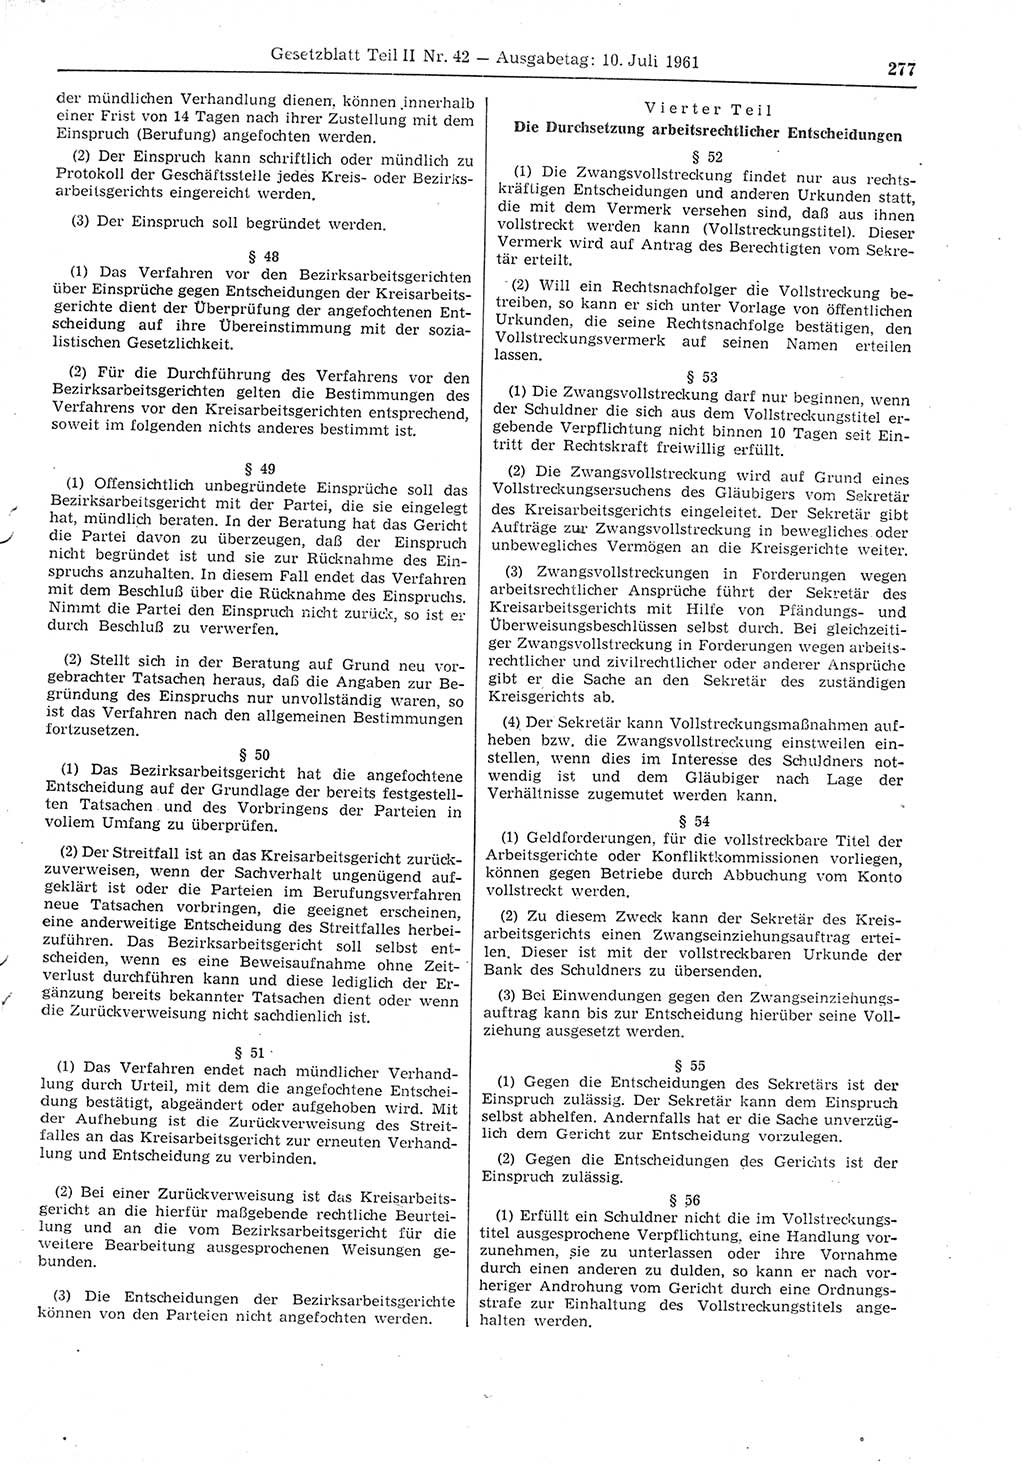 Gesetzblatt (GBl.) der Deutschen Demokratischen Republik (DDR) Teil ⅠⅠ 1961, Seite 277 (GBl. DDR ⅠⅠ 1961, S. 277)